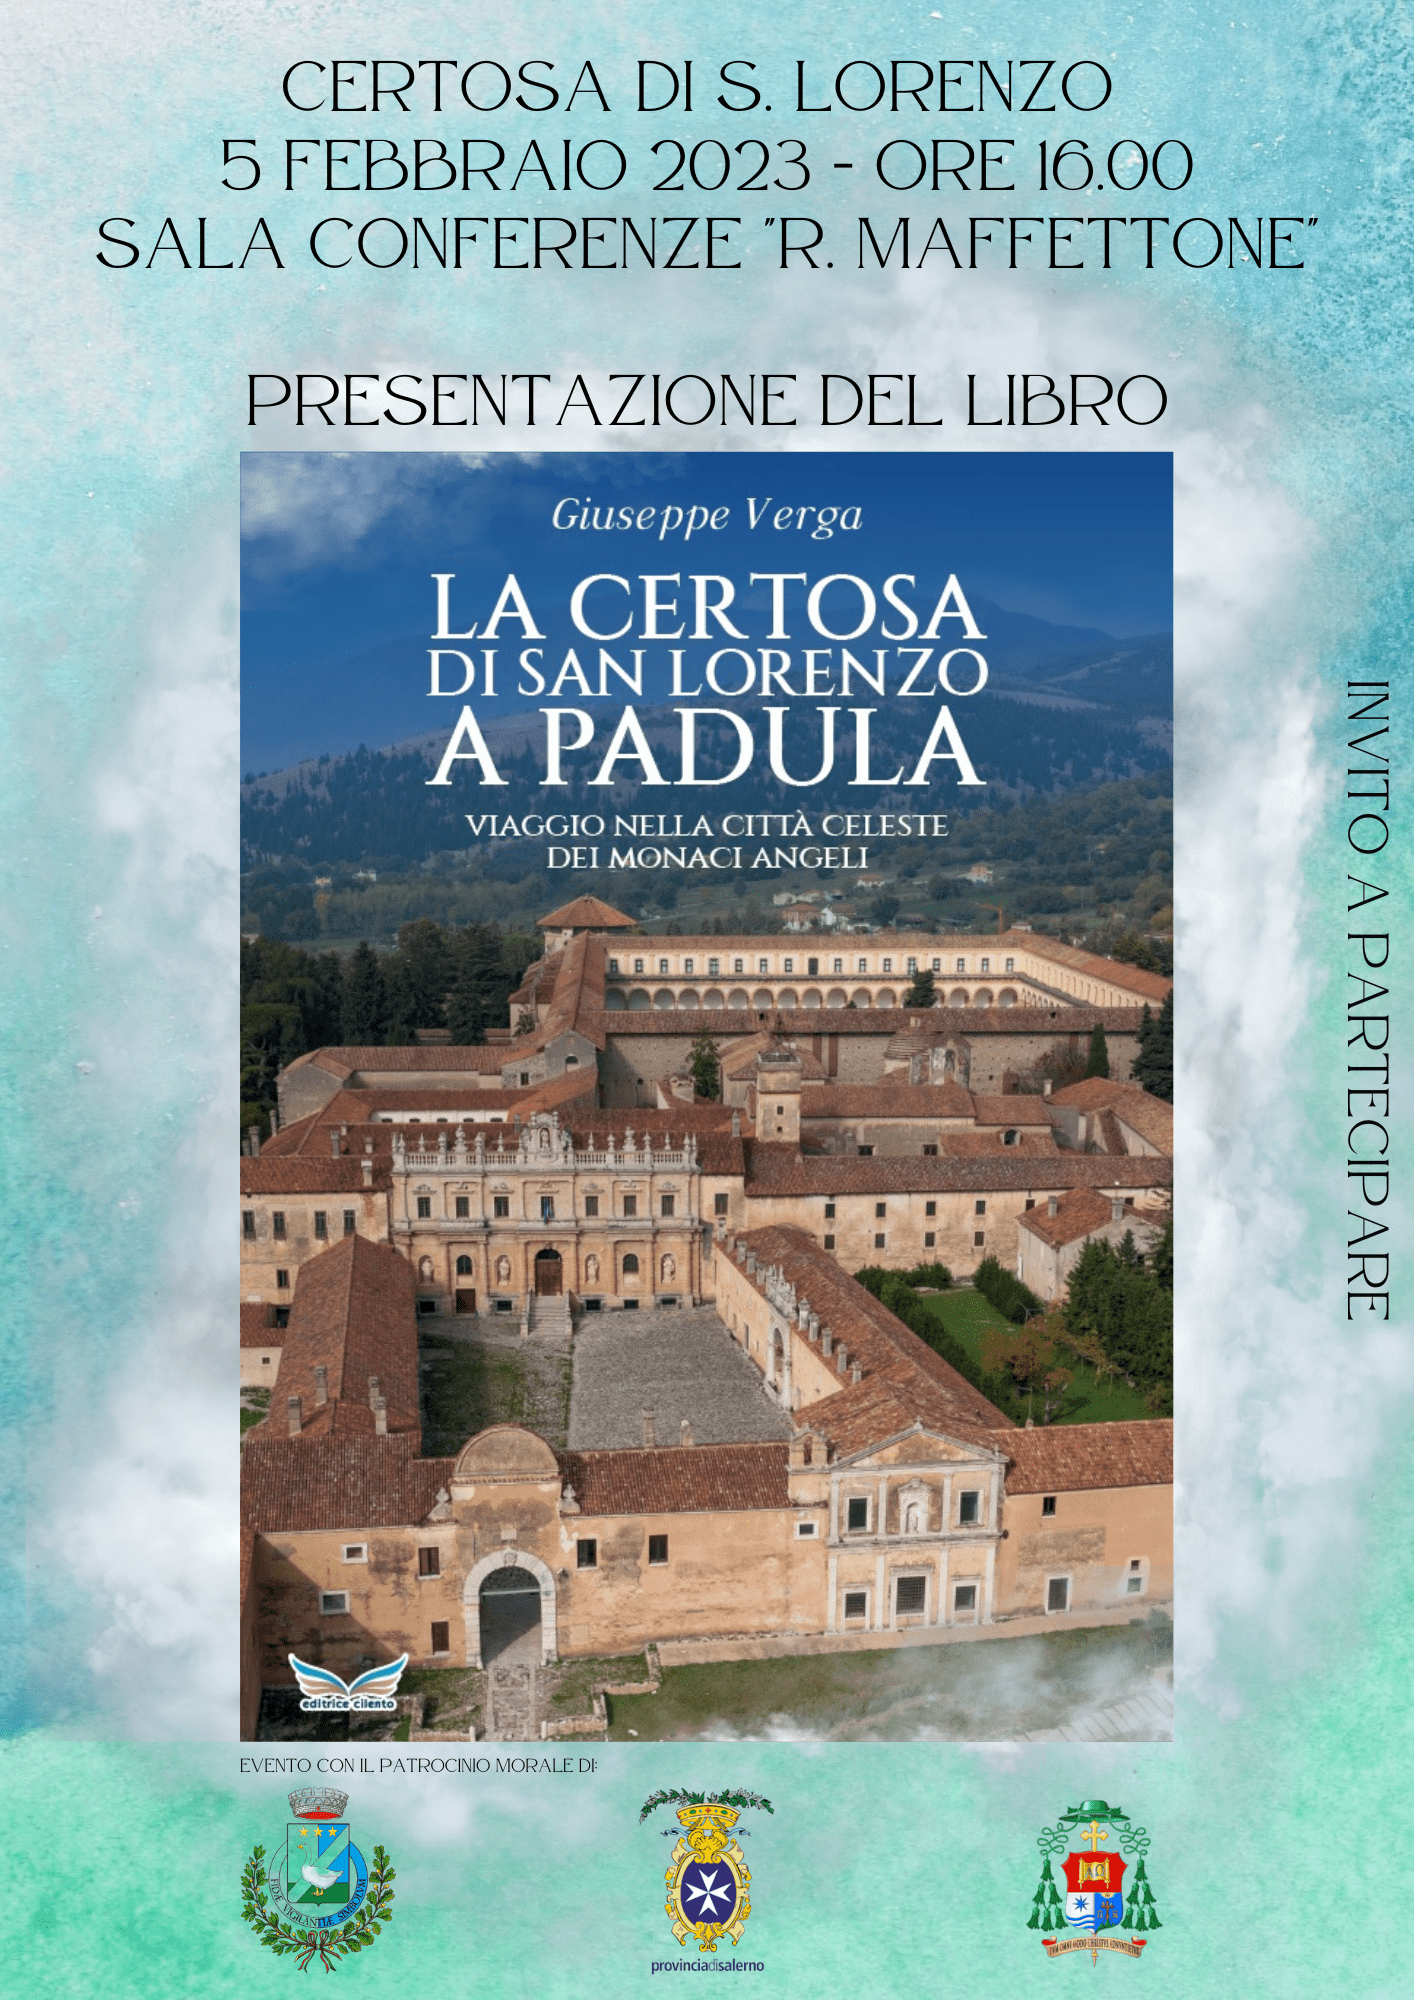 Presentazione del libro «La Certosa di San Lorenzo a Padula – viaggio nella città celeste dei monaci angeli» di Giuseppe Verga